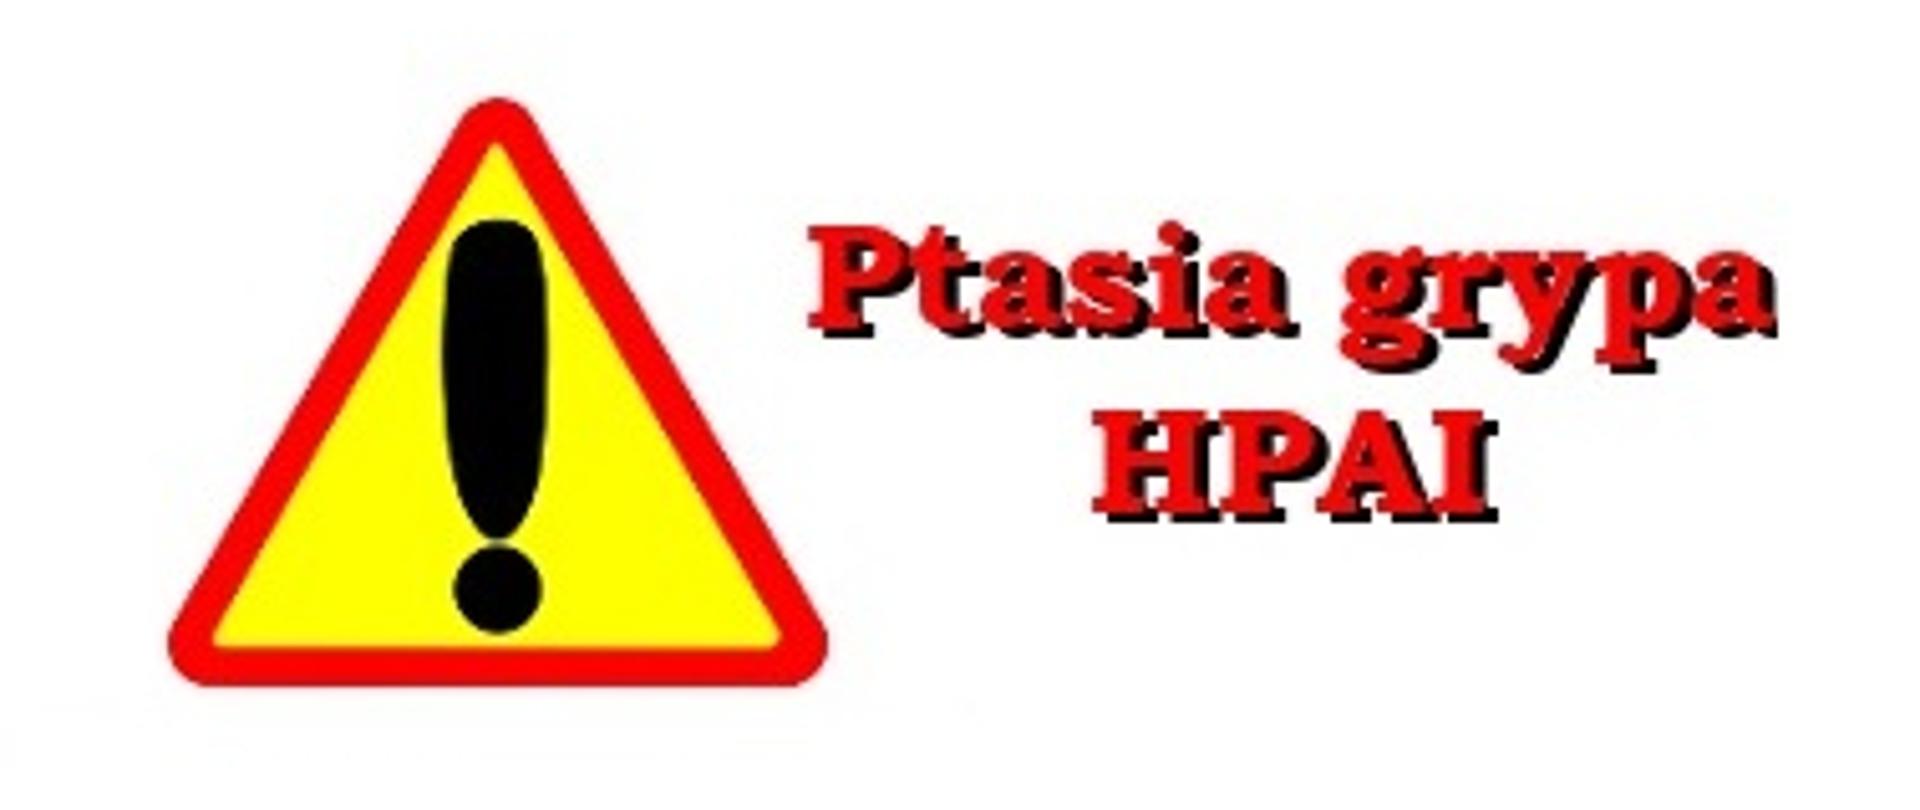 Zółty trójkątny znak z czerwoną obwódką i czarnym wykrzyknikiem. Obok czerwony tekst: Ptasis grypa HPAI